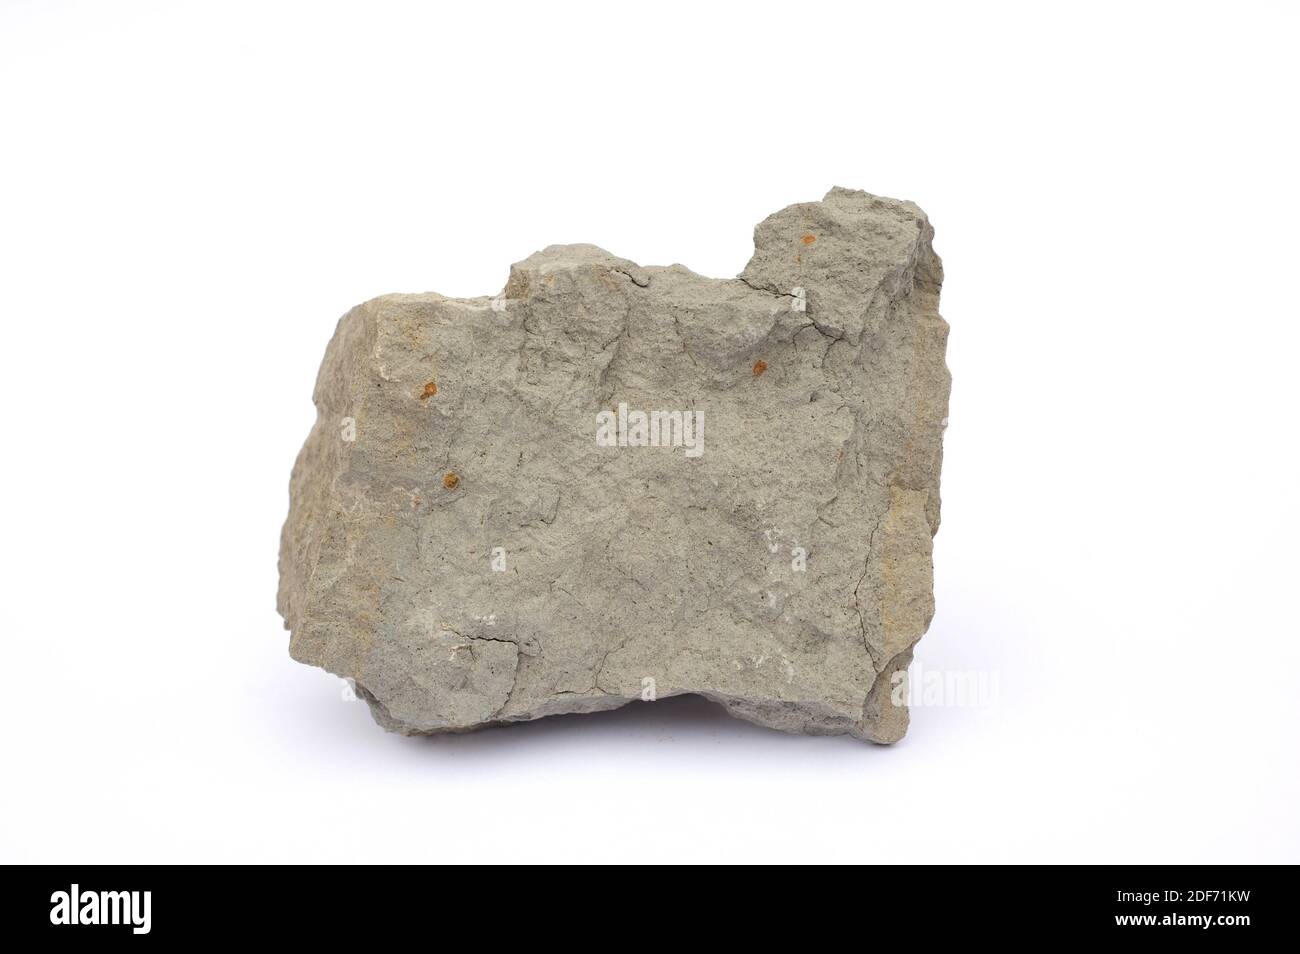 Mergel oder Mergel ist ein Sedimentgestein, das aus Kalkstein und Ton  besteht. Diese Probe stammt aus Tona, Provinz Barcelona, Katalonien,  Spanien Stockfotografie - Alamy